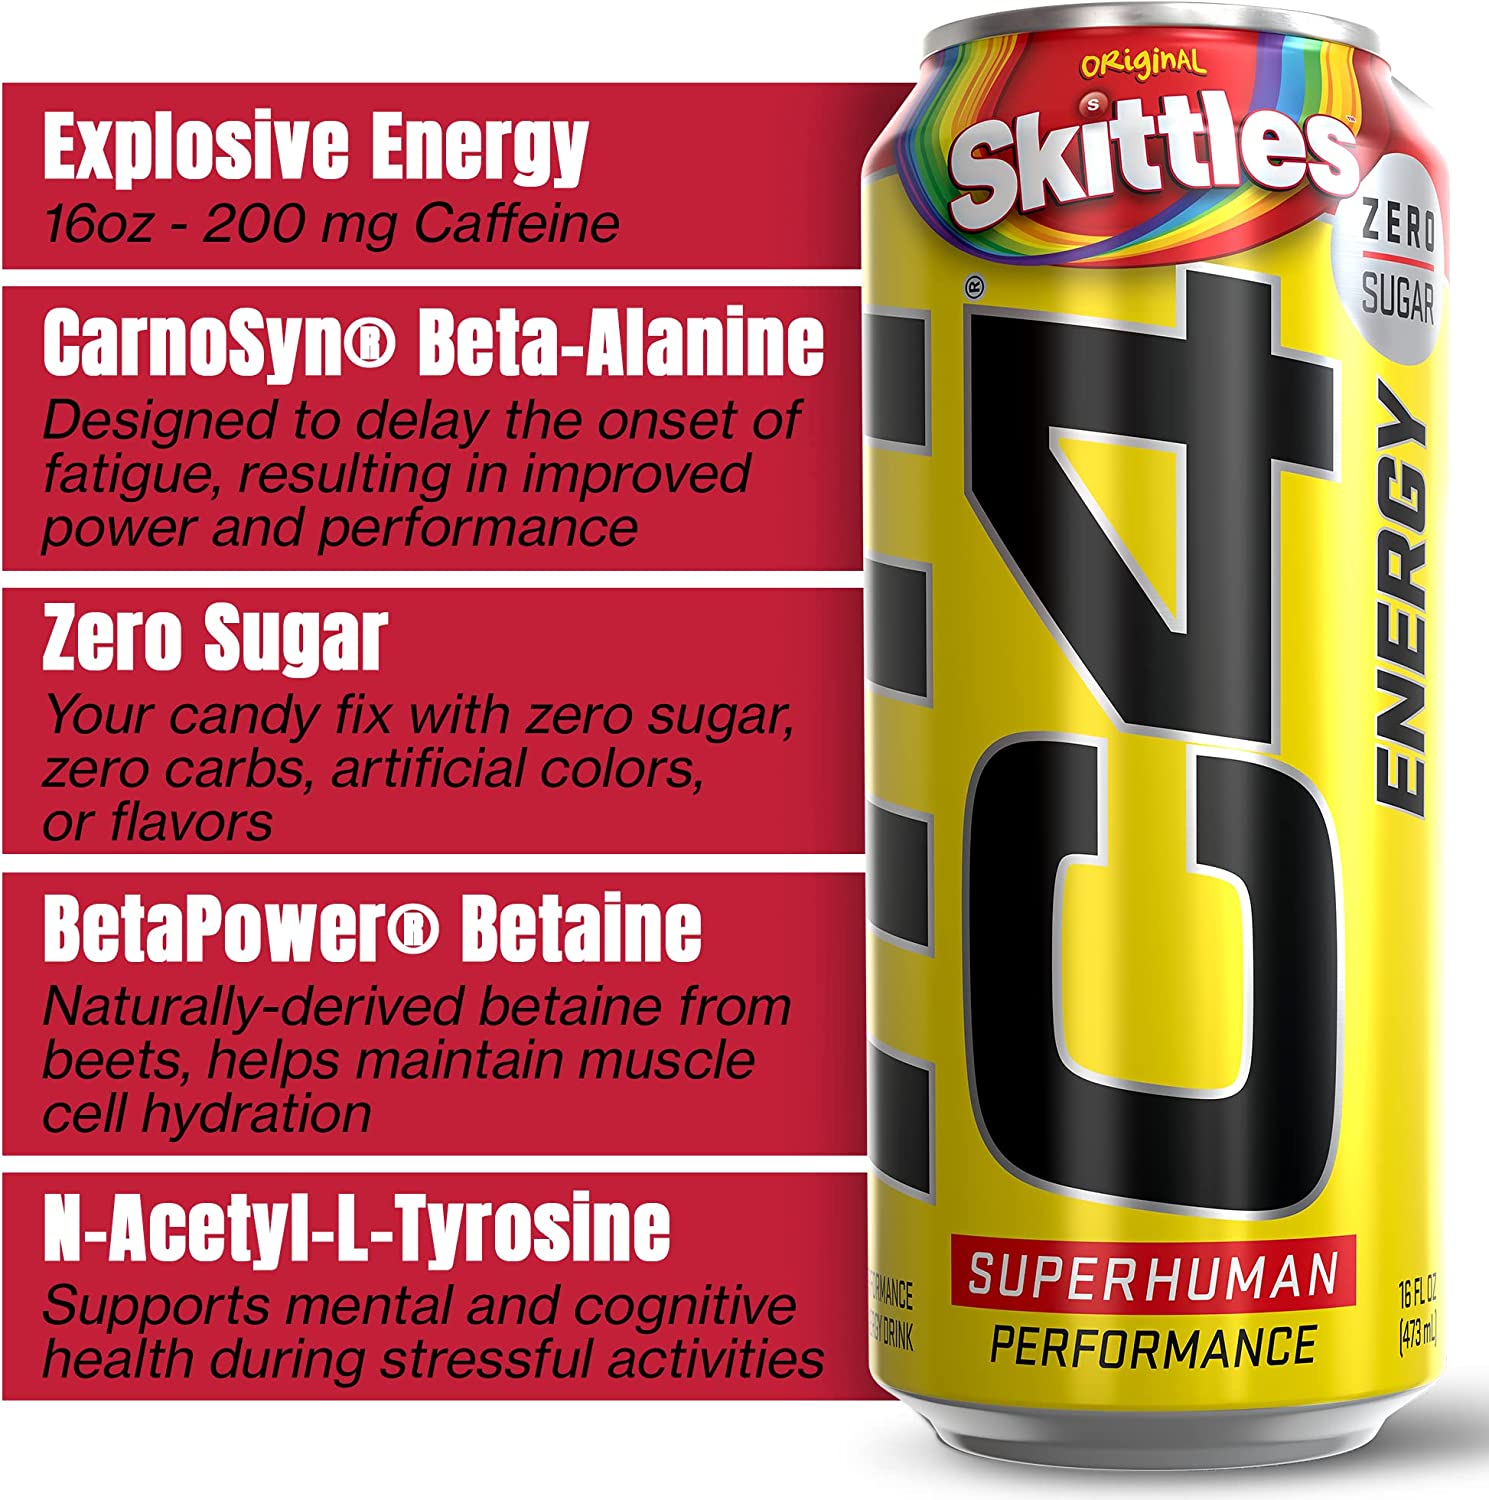 Skittles x C4 Energy Drinks Release